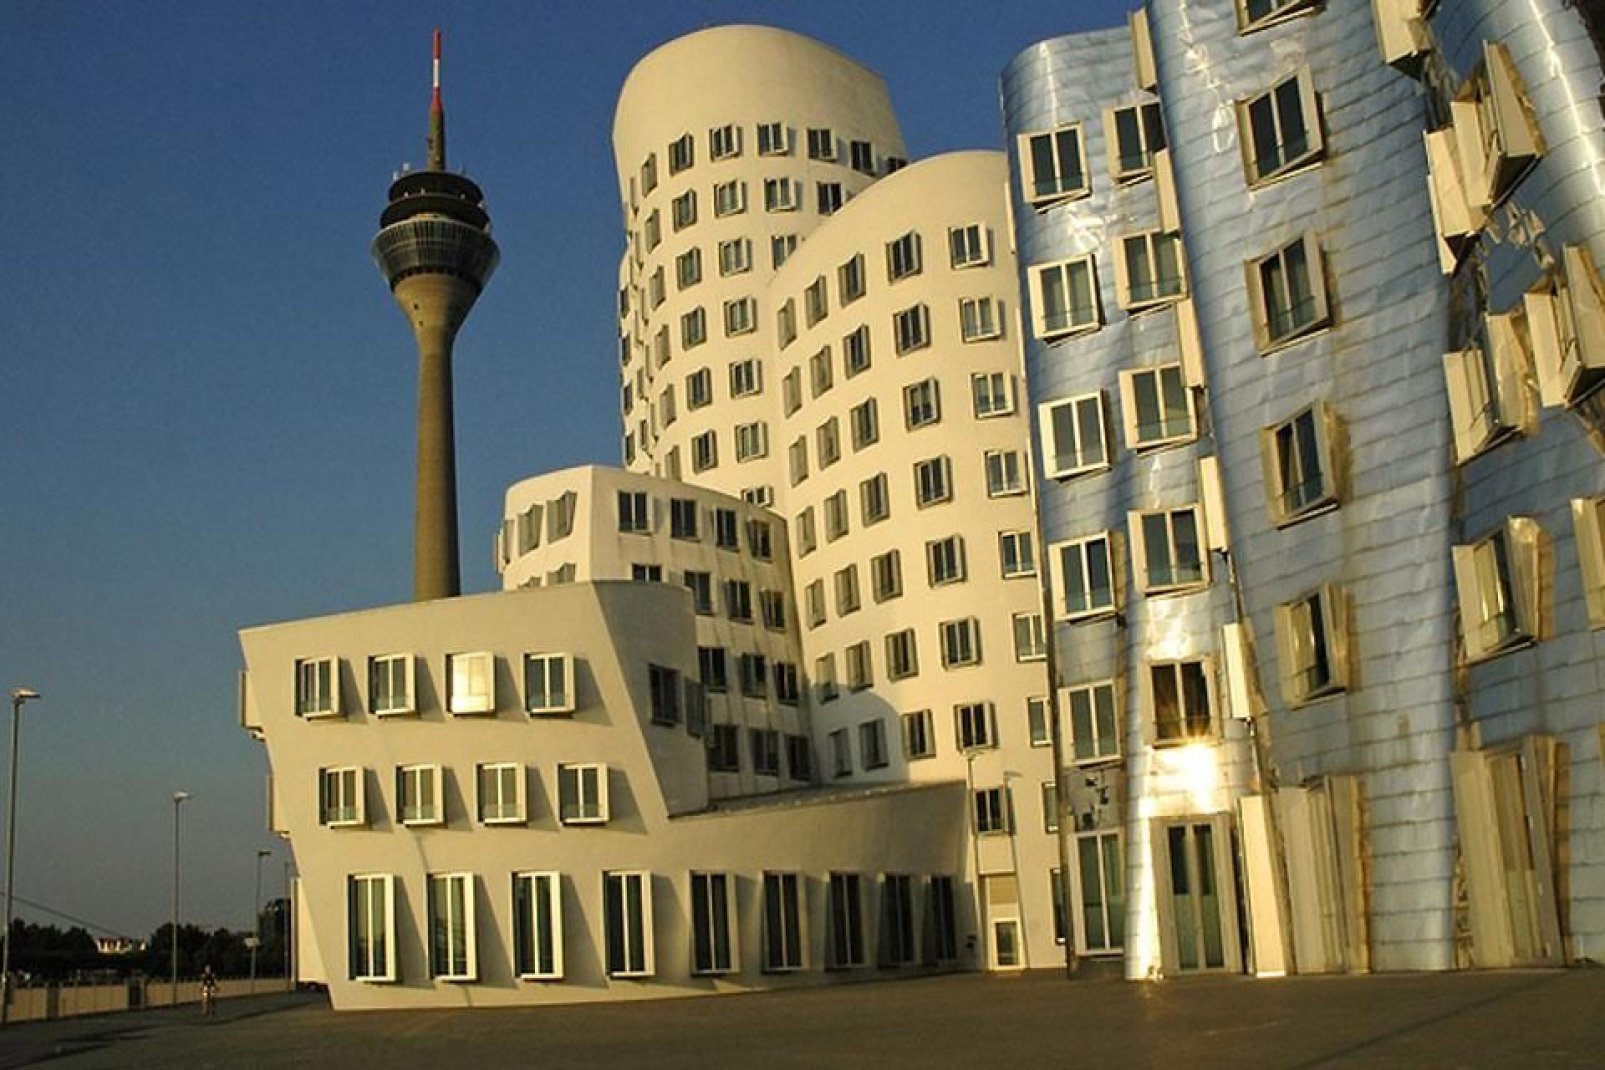 The Düsseldorf Medienhafen boasts modern architecture.